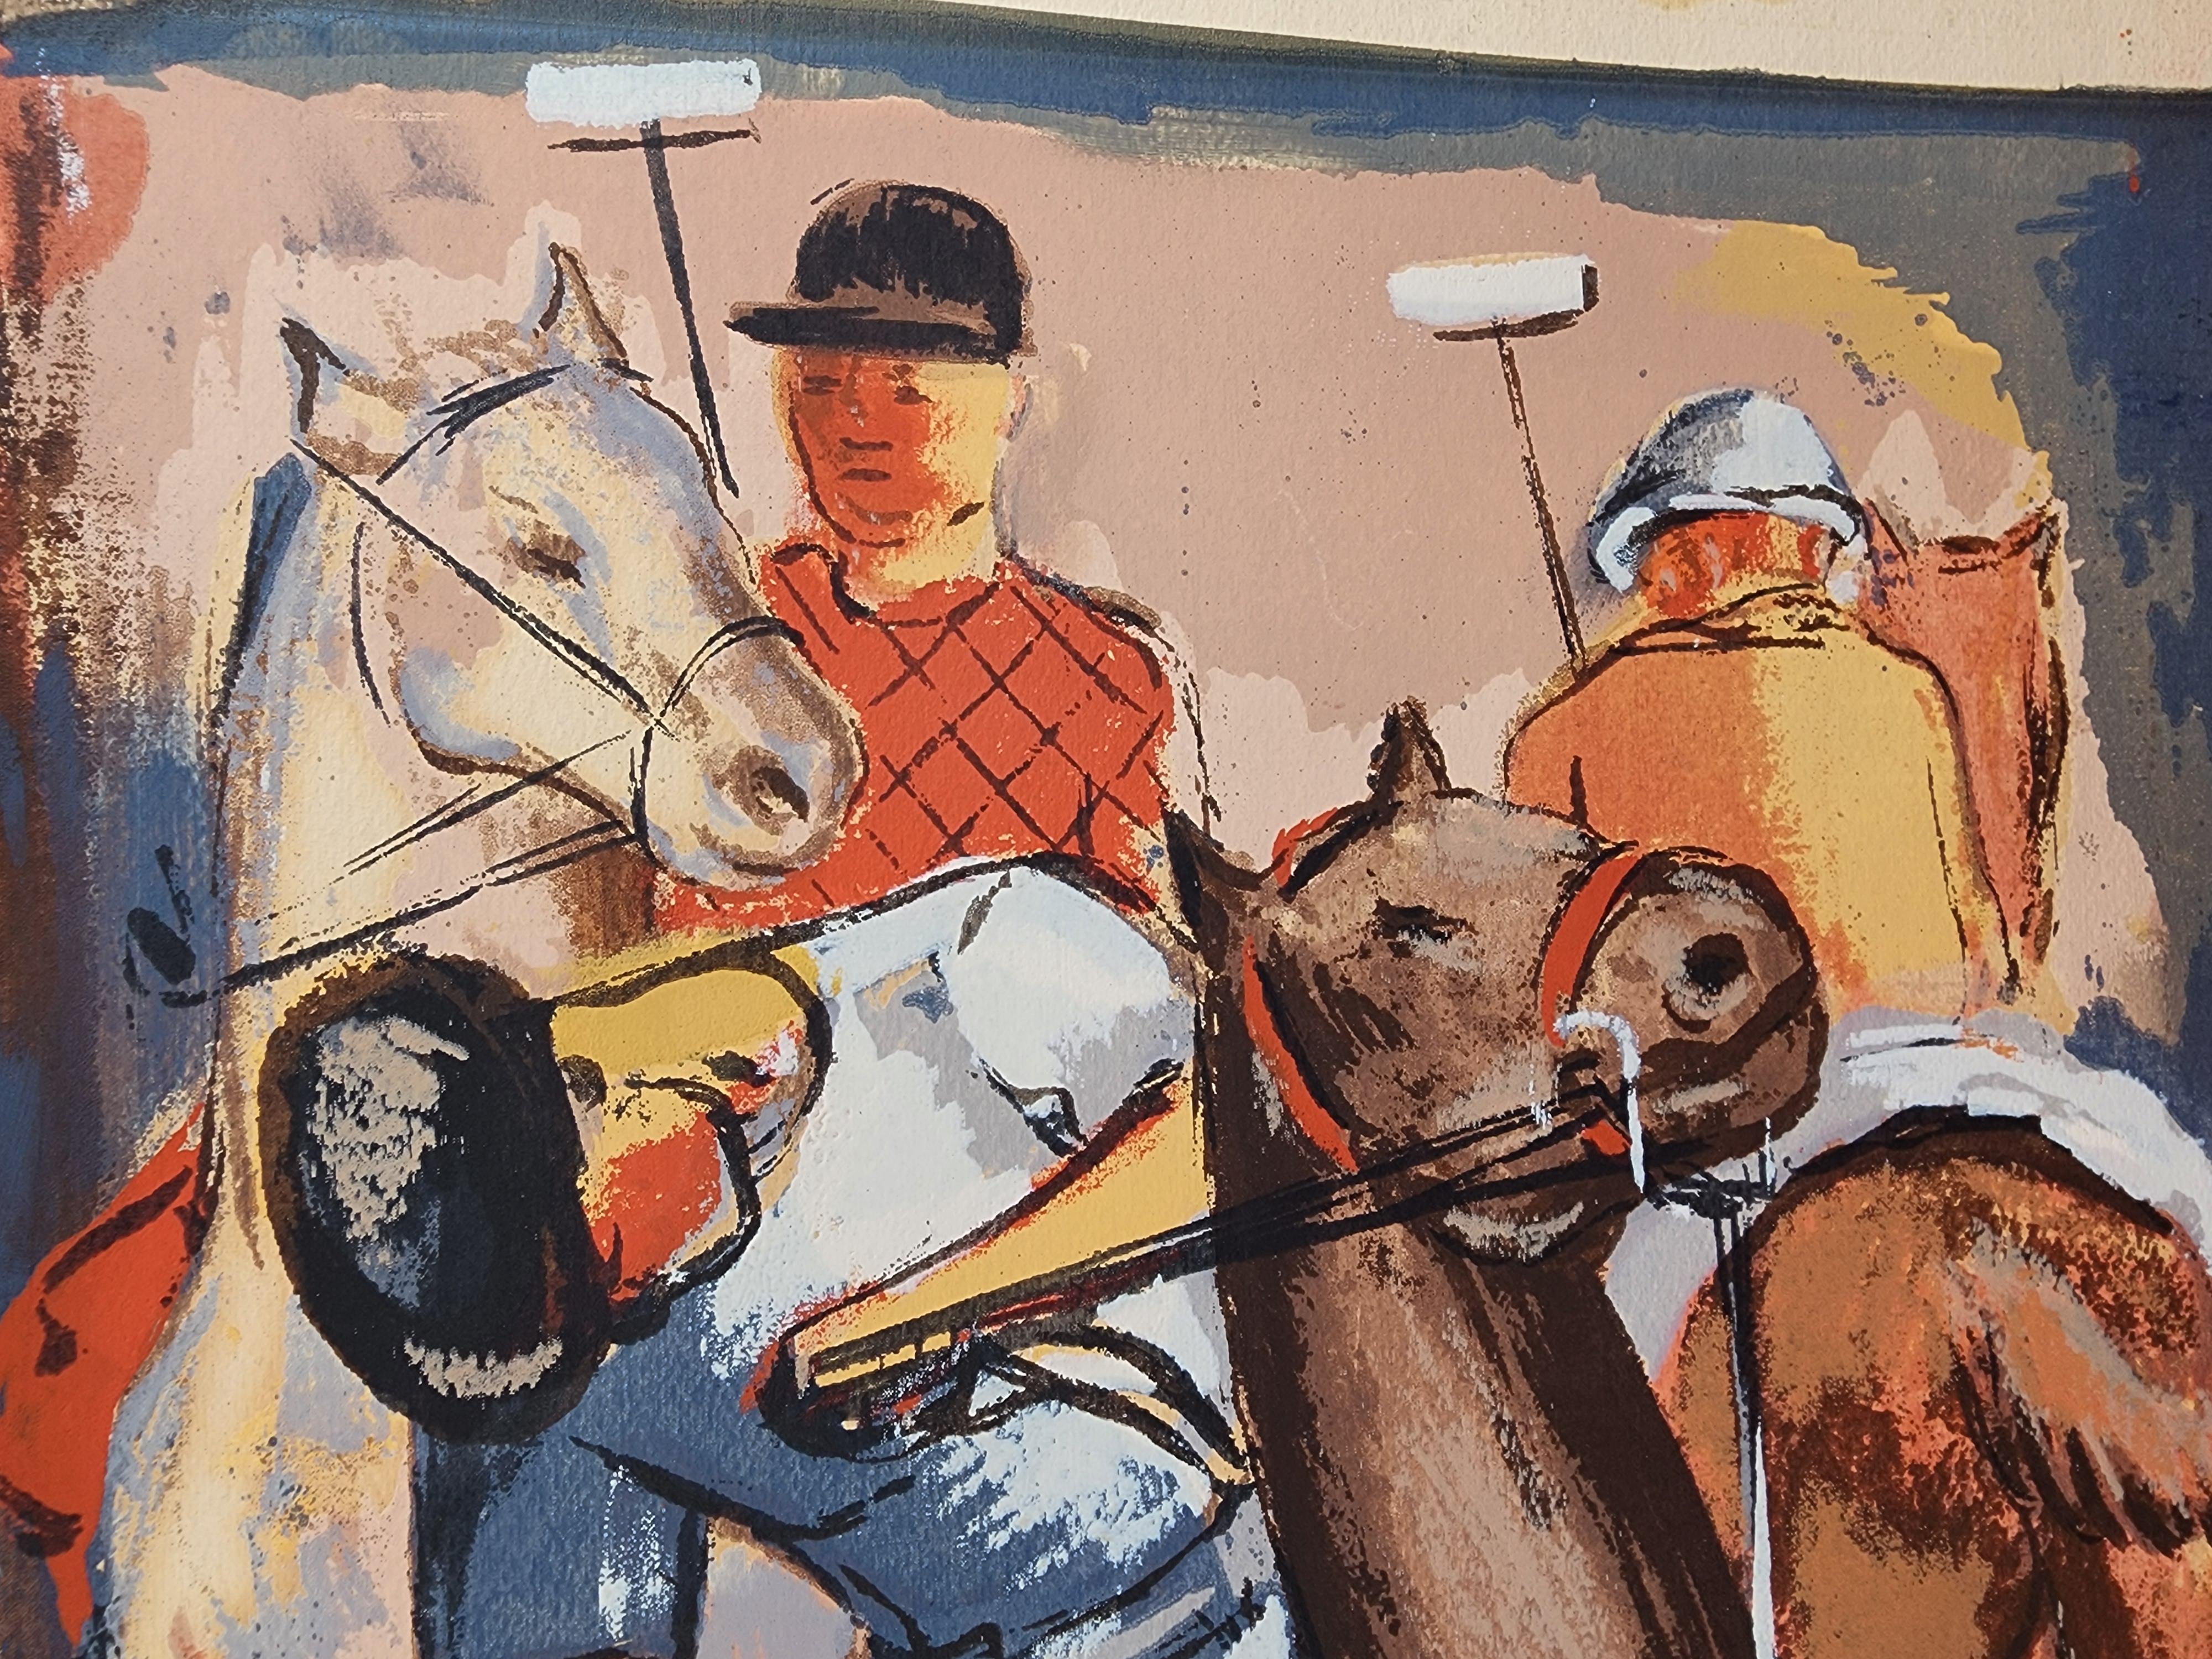 Ein wunderschöner Siebdruck von Riva Helfond, der ein Paar Polospieler zu Pferd zeigt.
Helfond ist bekannt für ihre Teilnahme an der WPA und für ihre Siebdrucke.
UNSIGNIERT